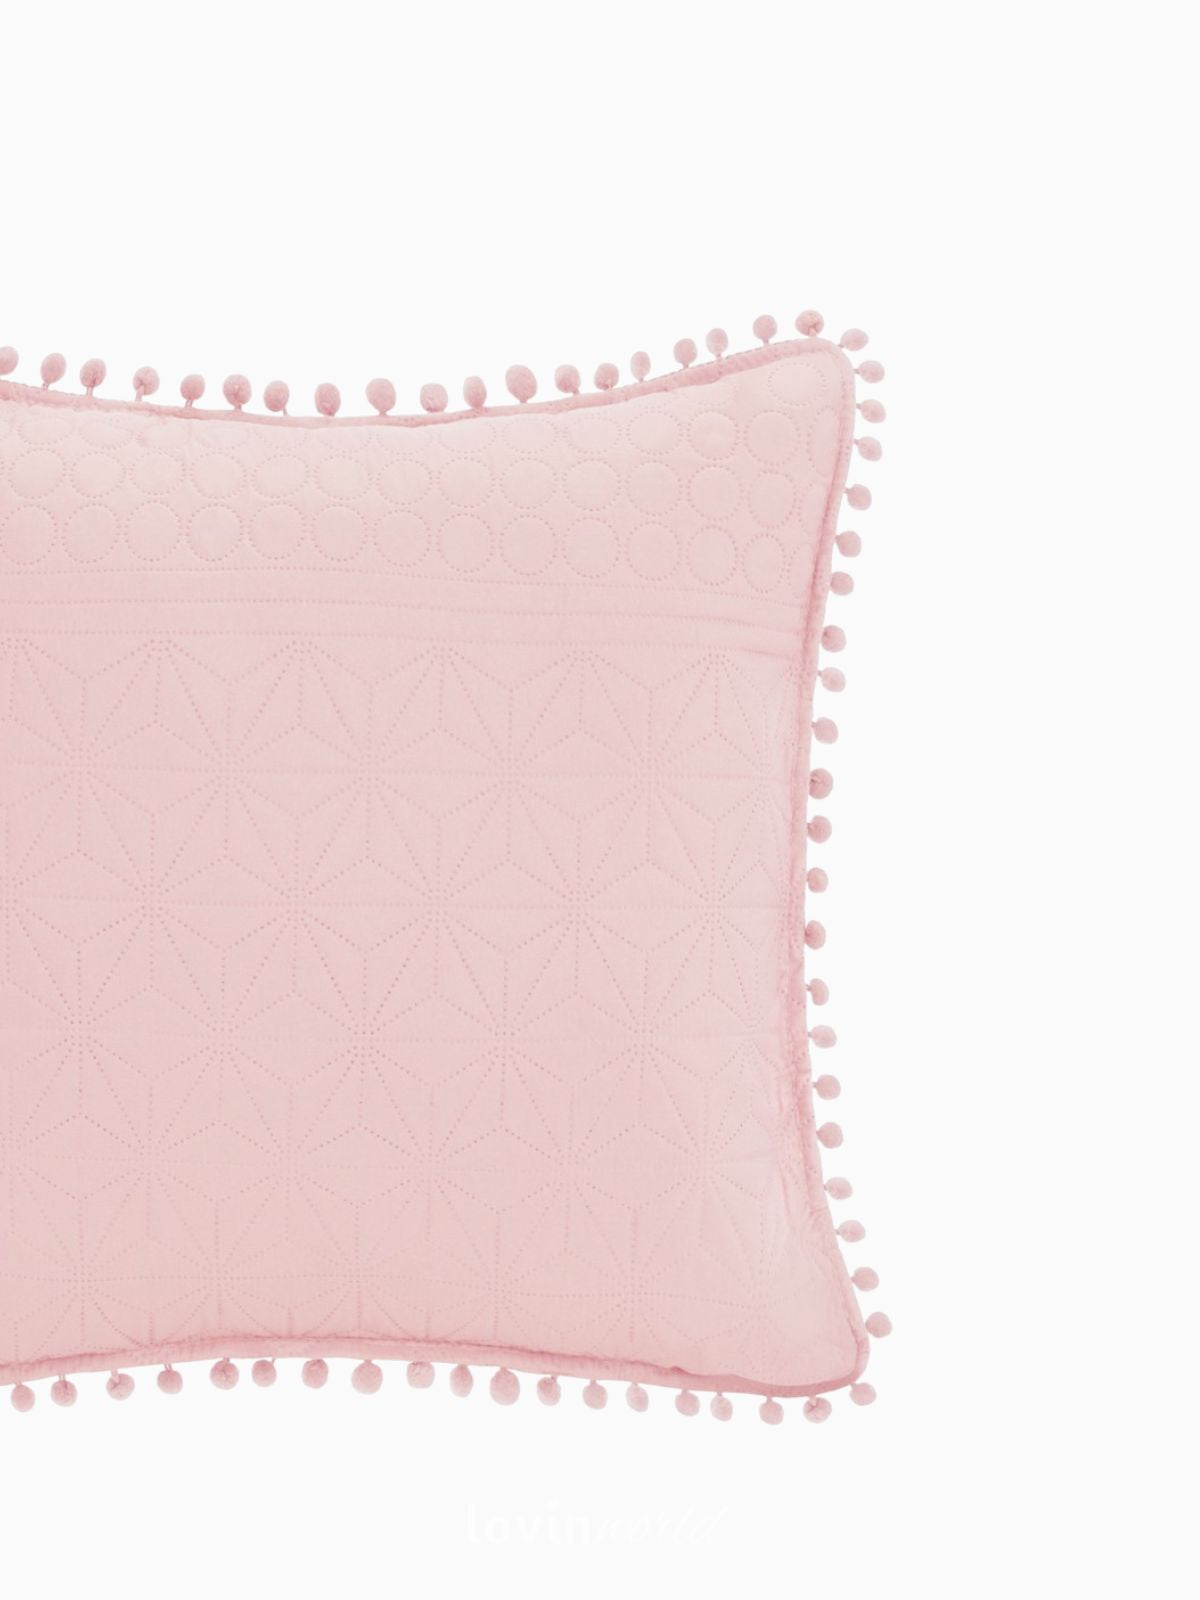 Cuscino decorativo Meadore in colore rosa 45x45 cm.-3